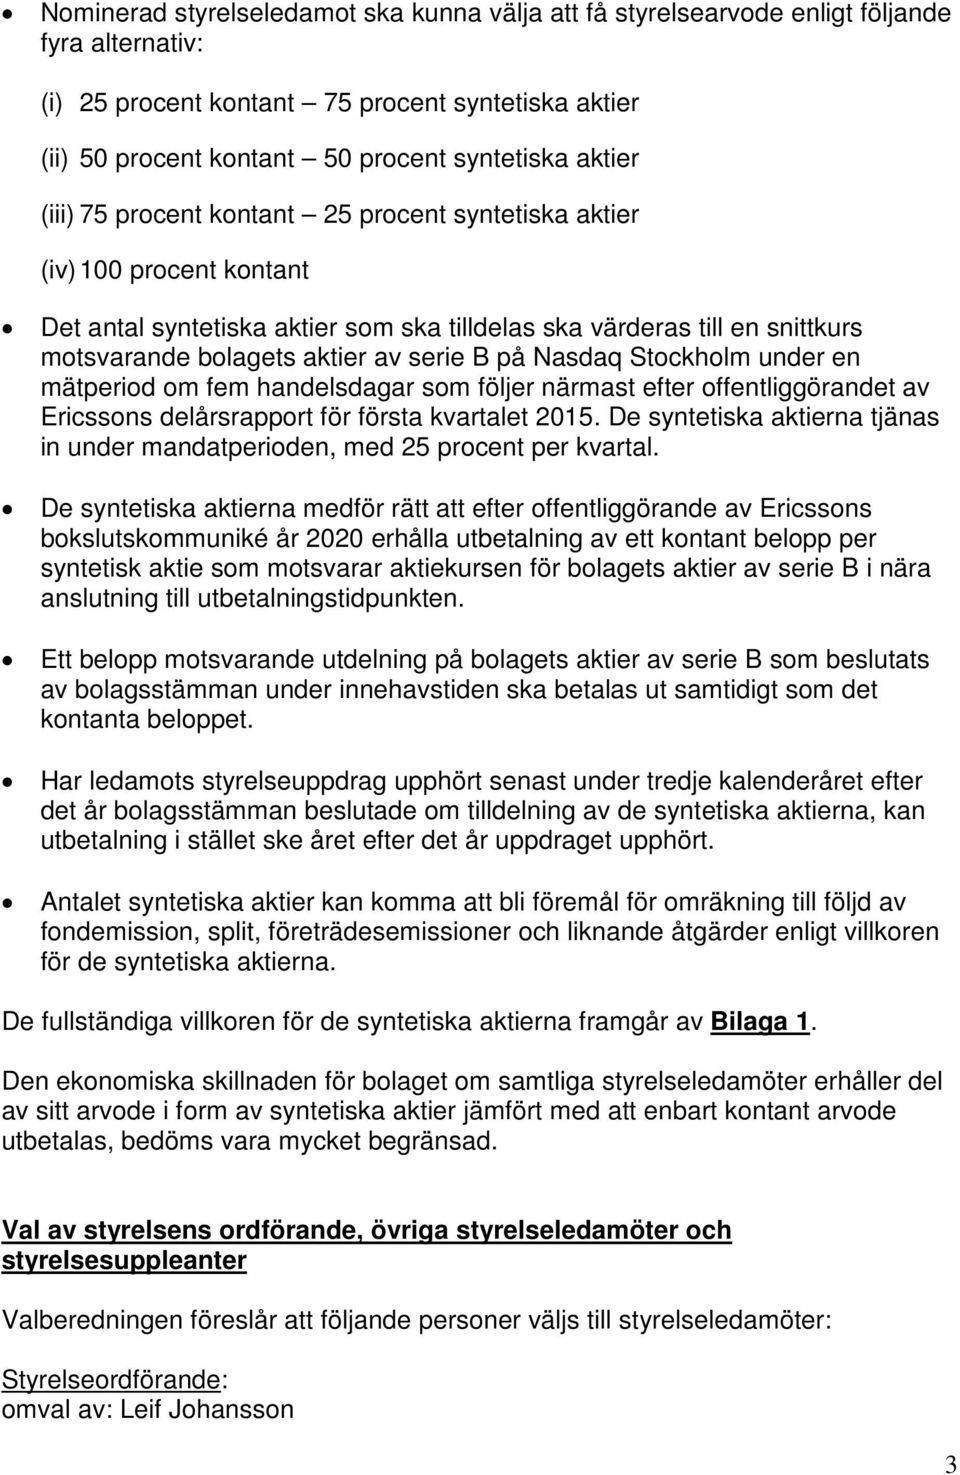 B på Nasdaq Stockholm under en mätperiod om fem handelsdagar som följer närmast efter offentliggörandet av Ericssons delårsrapport för första kvartalet 2015.